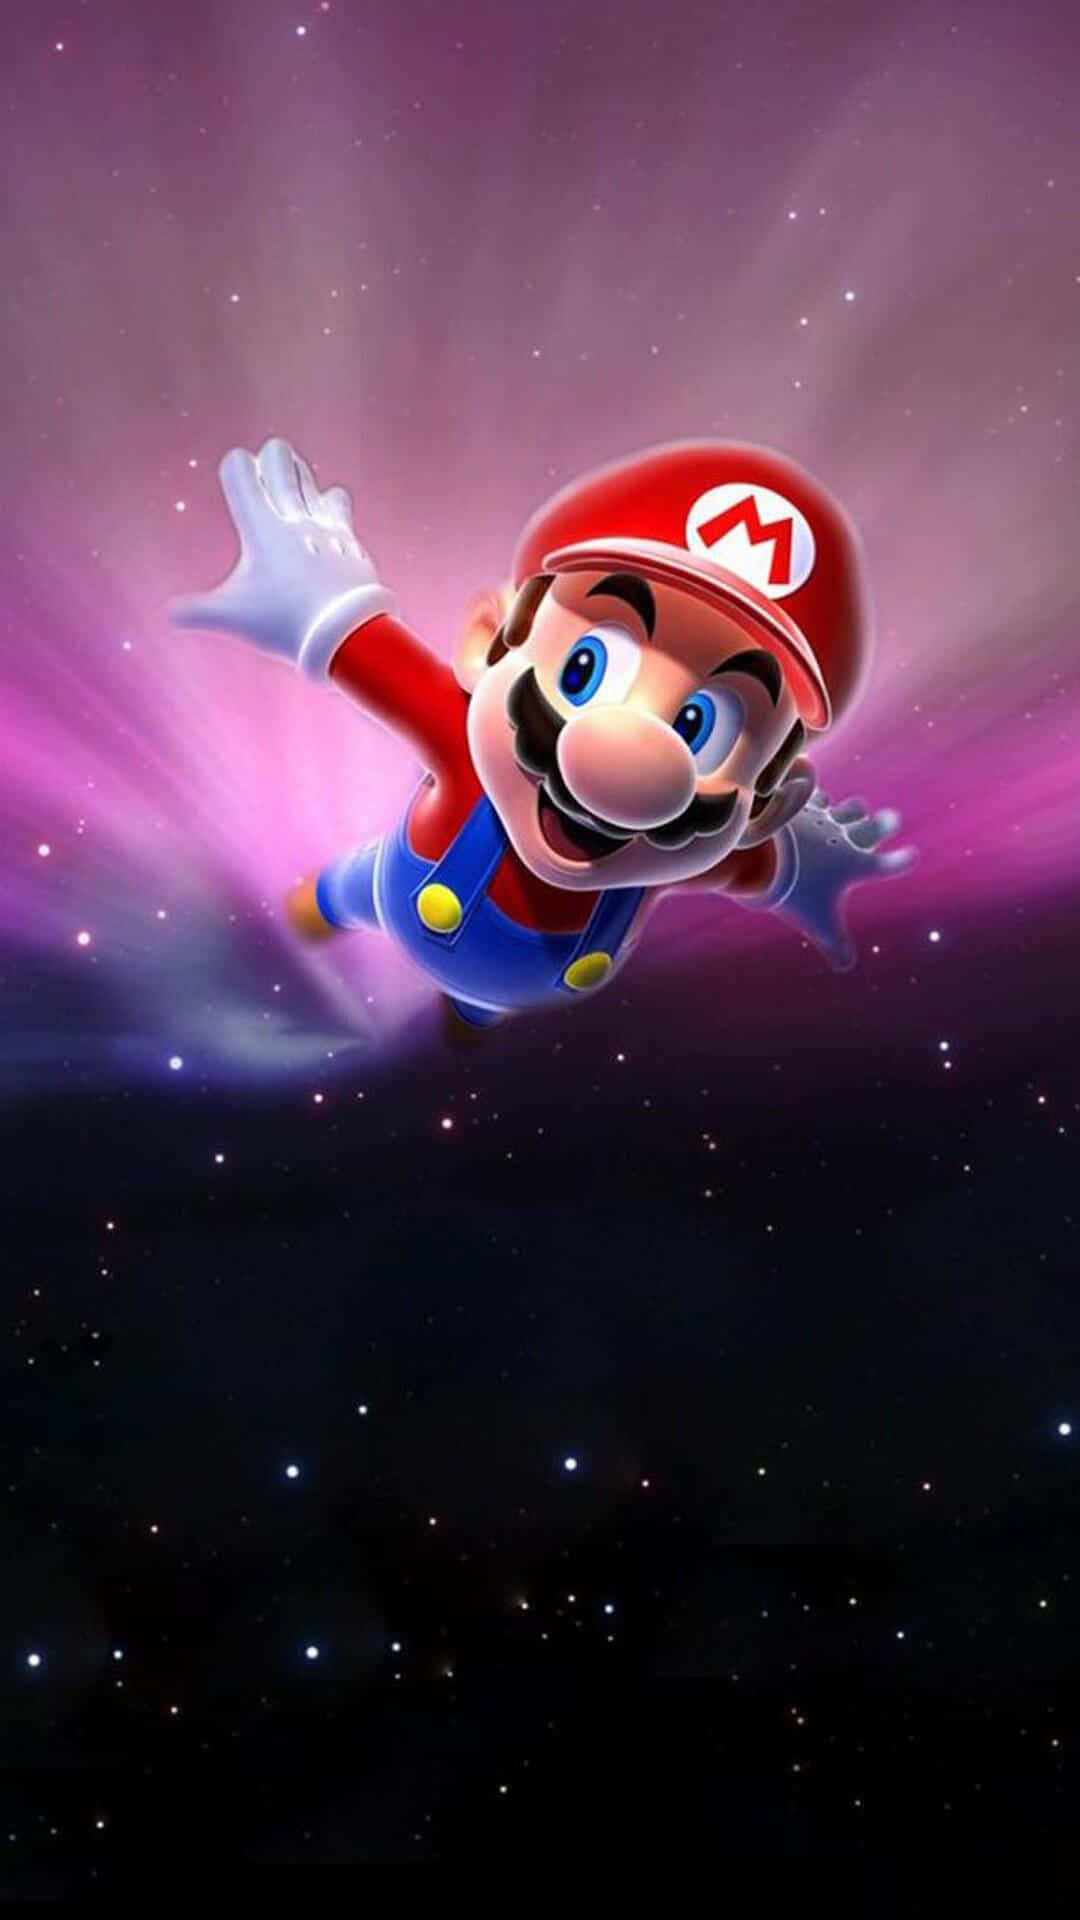 Verbessernsie Ihr Mobiles Spielerlebnis Mit Super Mario. Wallpaper